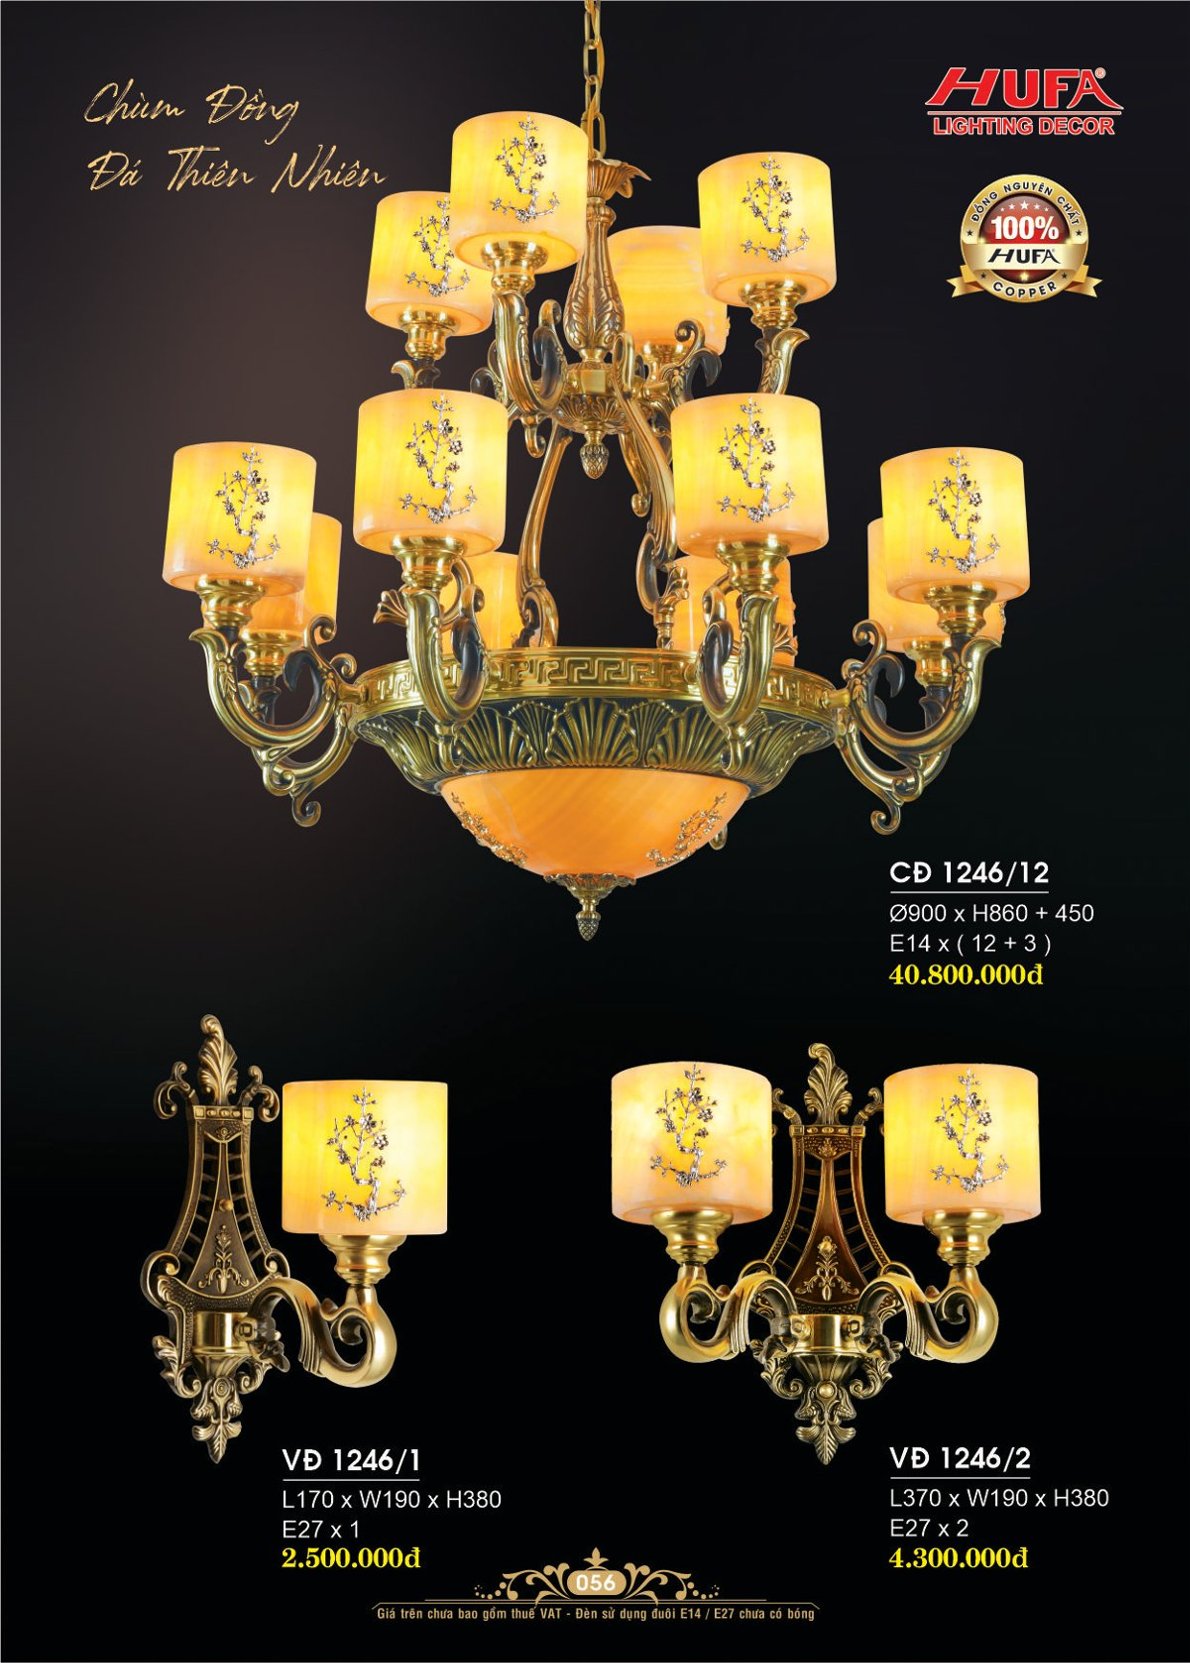 Đèn chùm đồng nguyên chất, đèn trang trí Hufa CĐ 1089/20+5 cao cấp, giá rẻ, bảo hành lâu dài, hỗ trợ lắp đặt, giao hàng toàn quốc. Đèn chùm đồng Hufa được bảo trì trọn đời.